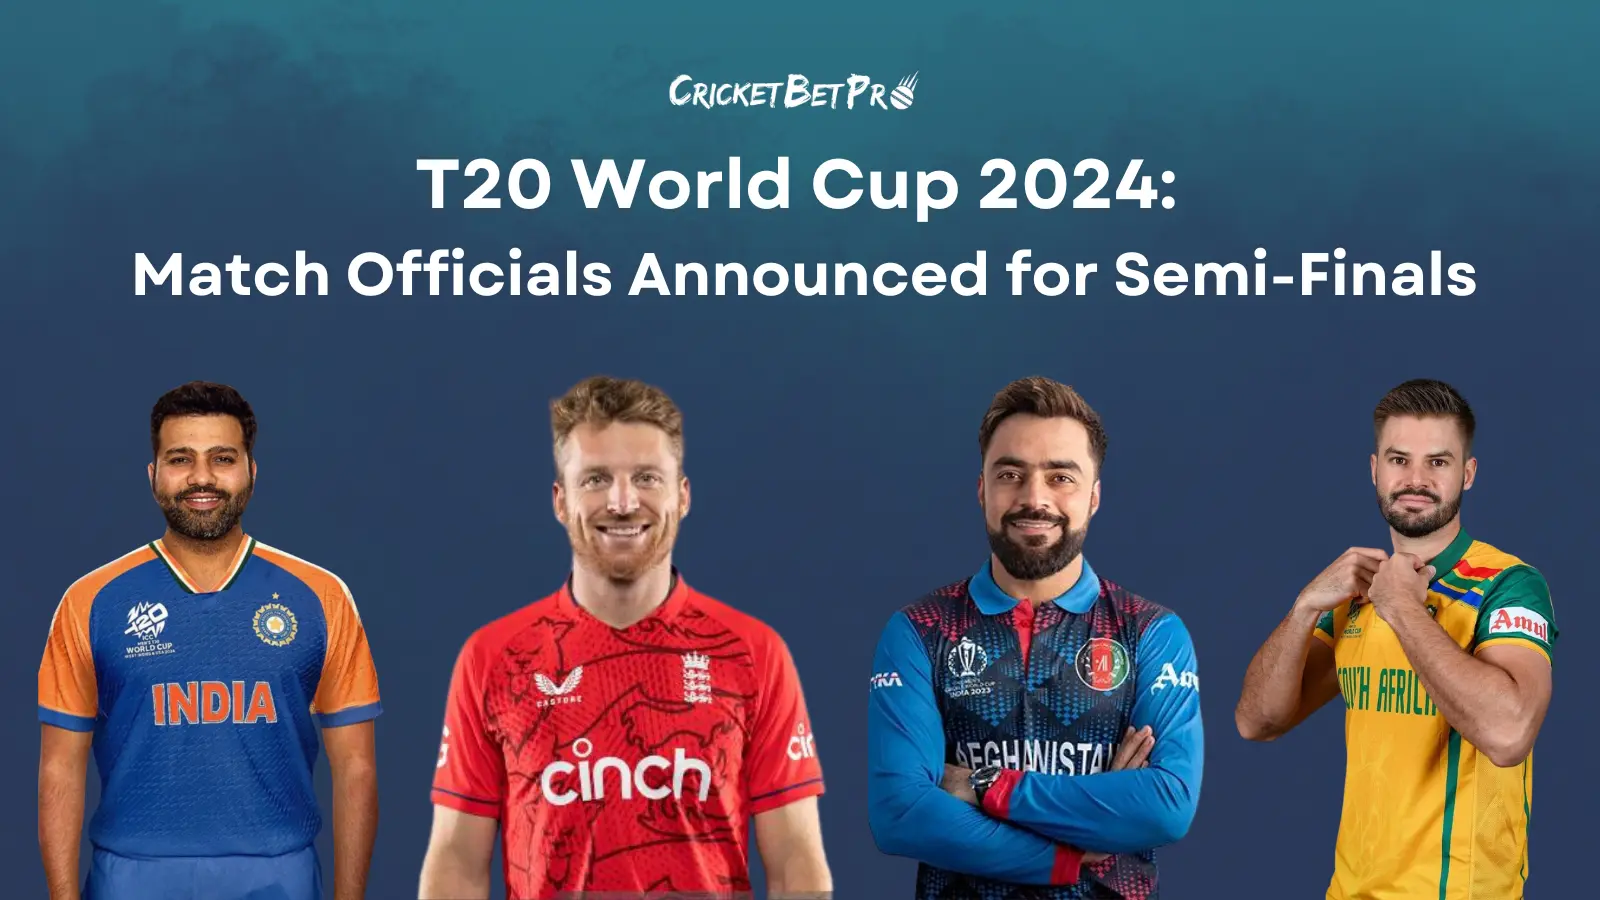 T20 World Cup 2024 Semi-Finals